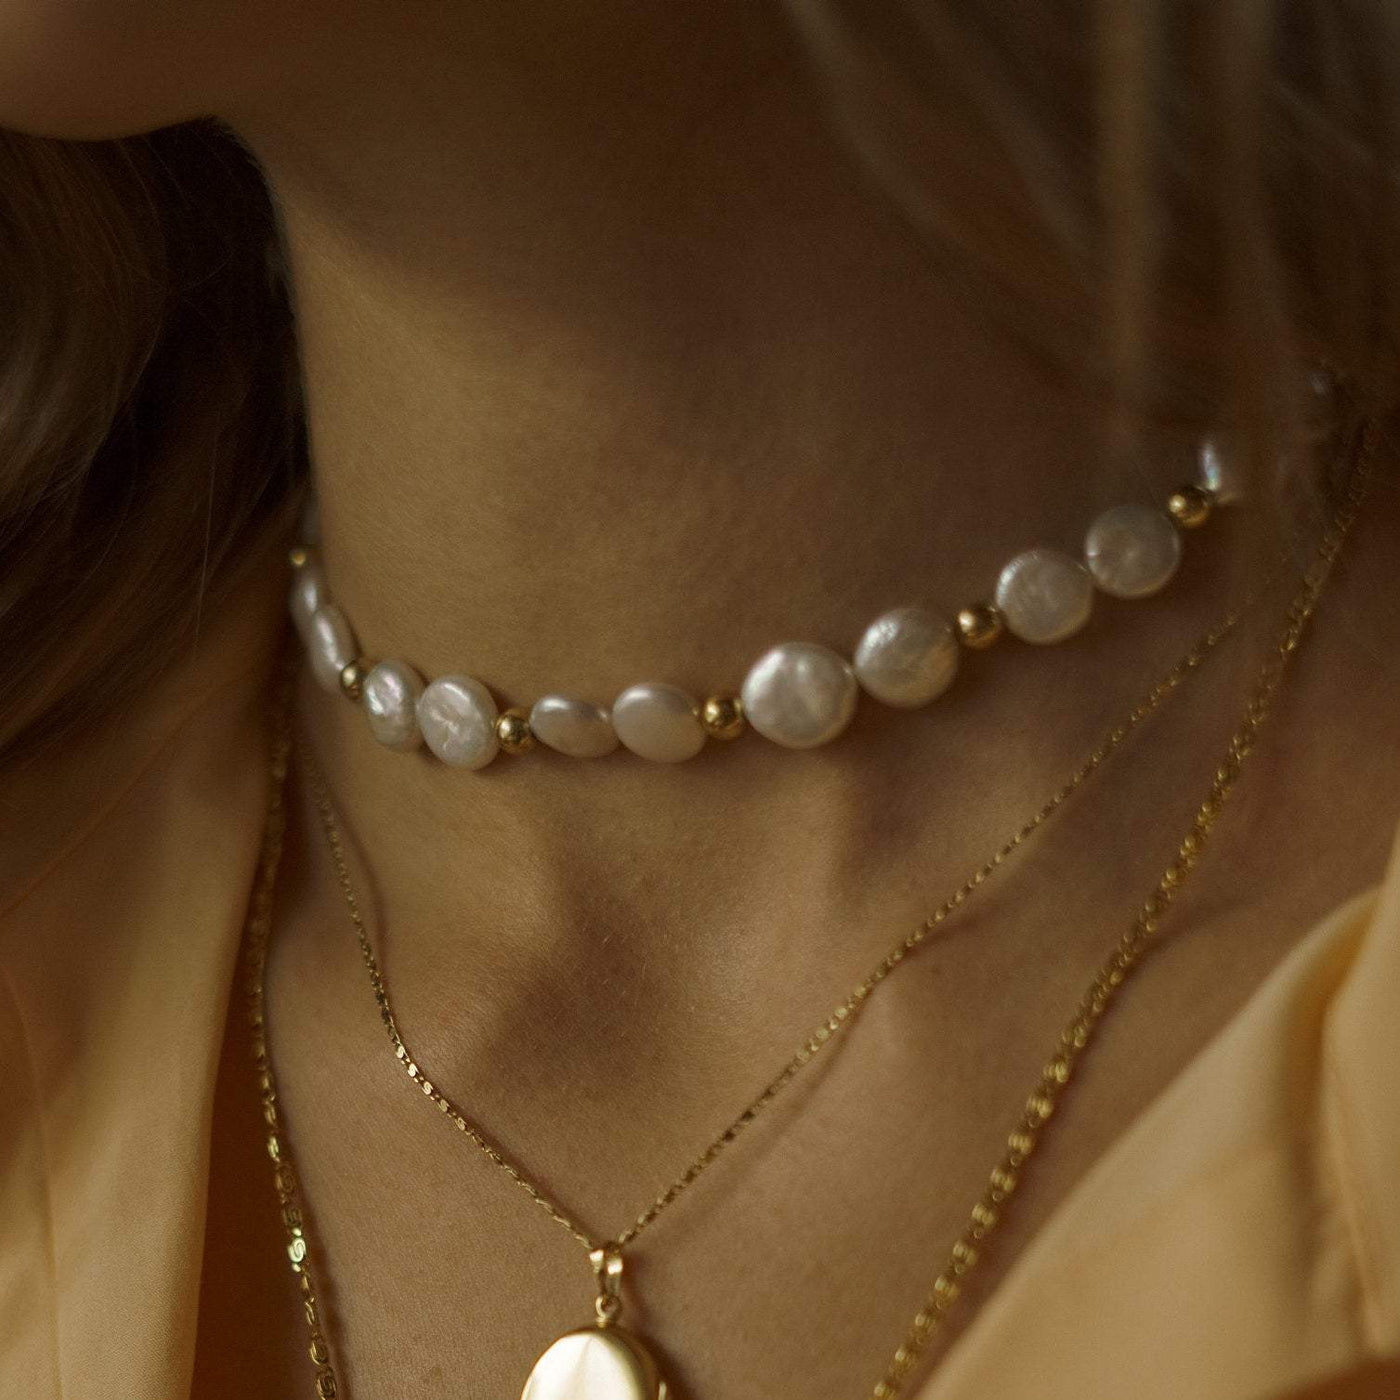 AURORA – Halsband mit Perlen in Gold, Silber oder Roségold